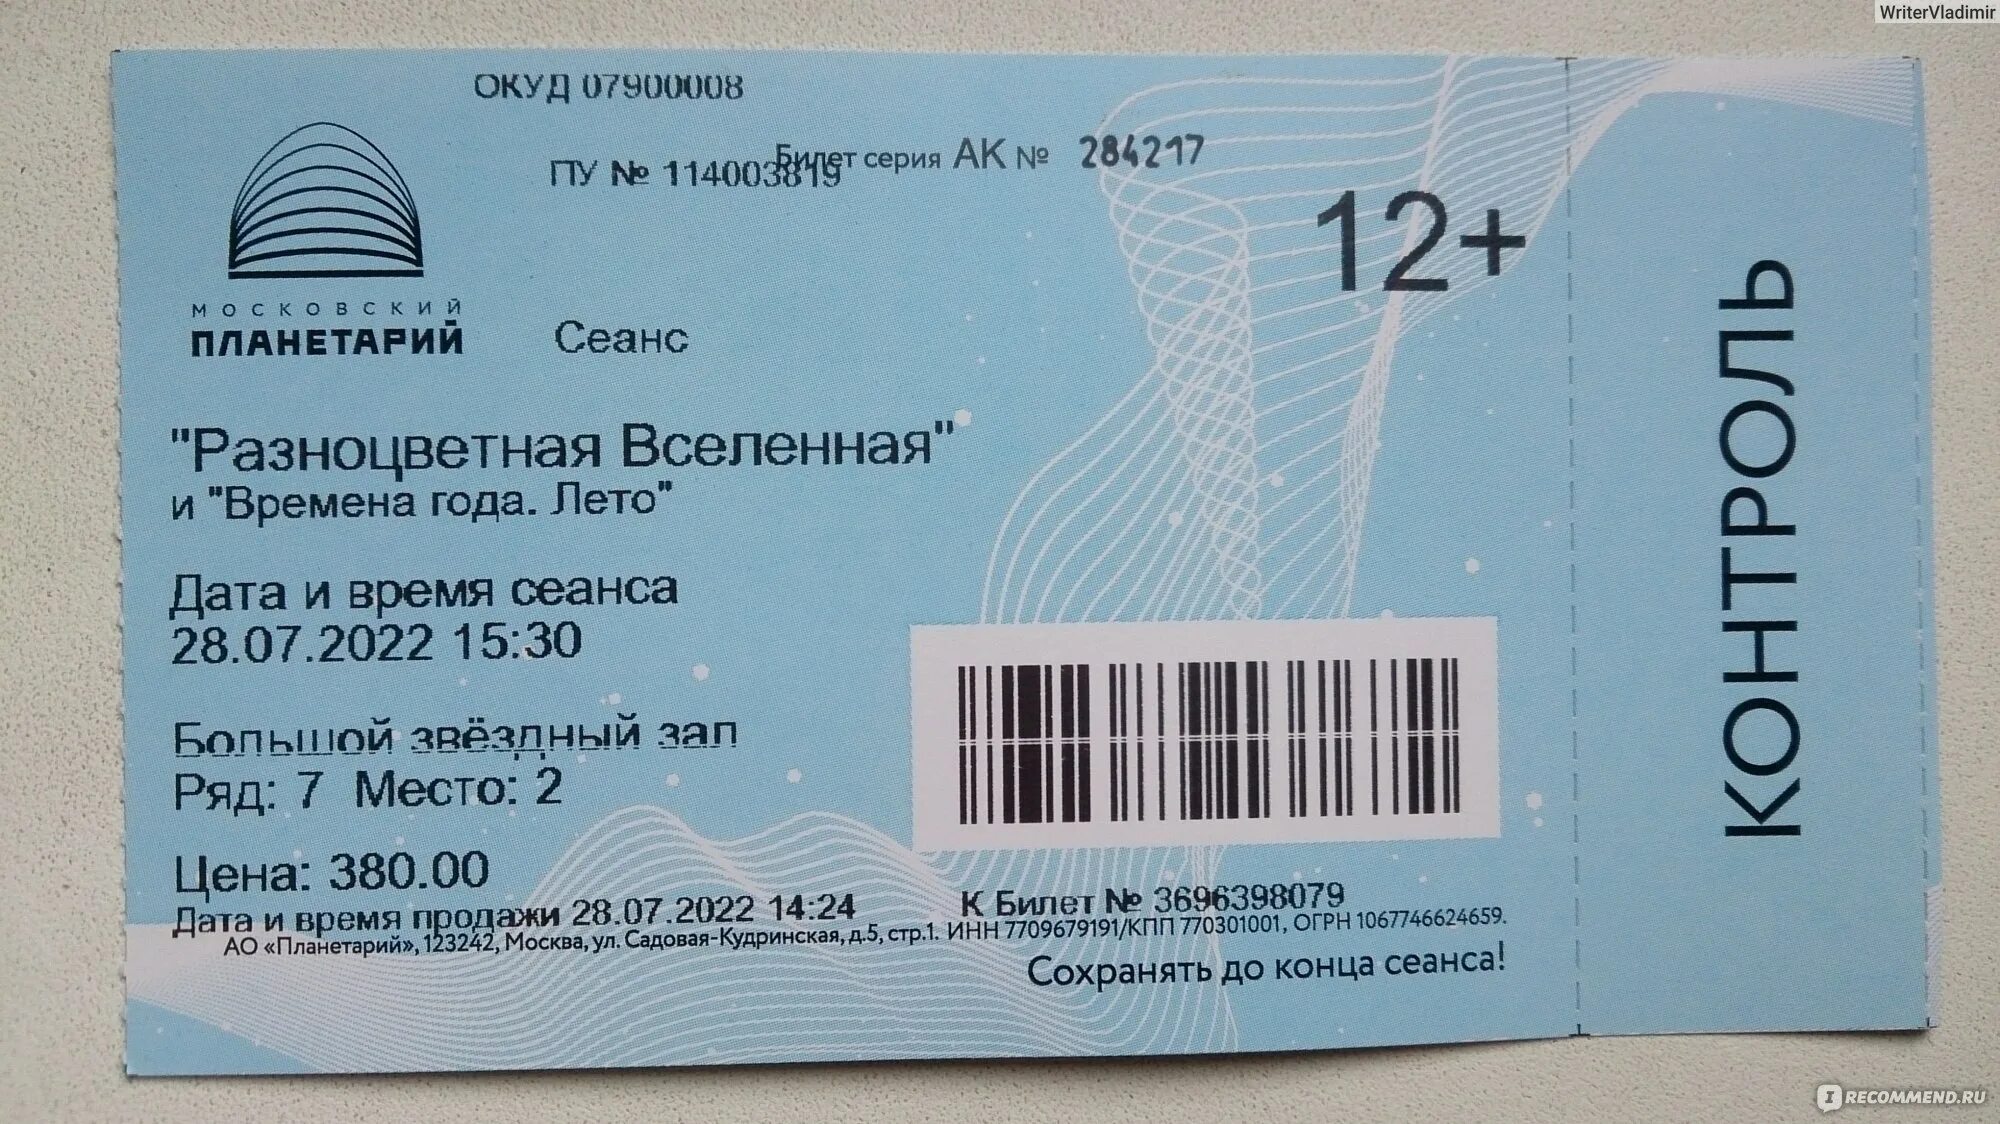 Планетарий москва билеты цена 2023 расписание. Билеты в планетарий в Москве. Планетарий в Москве пример билета.